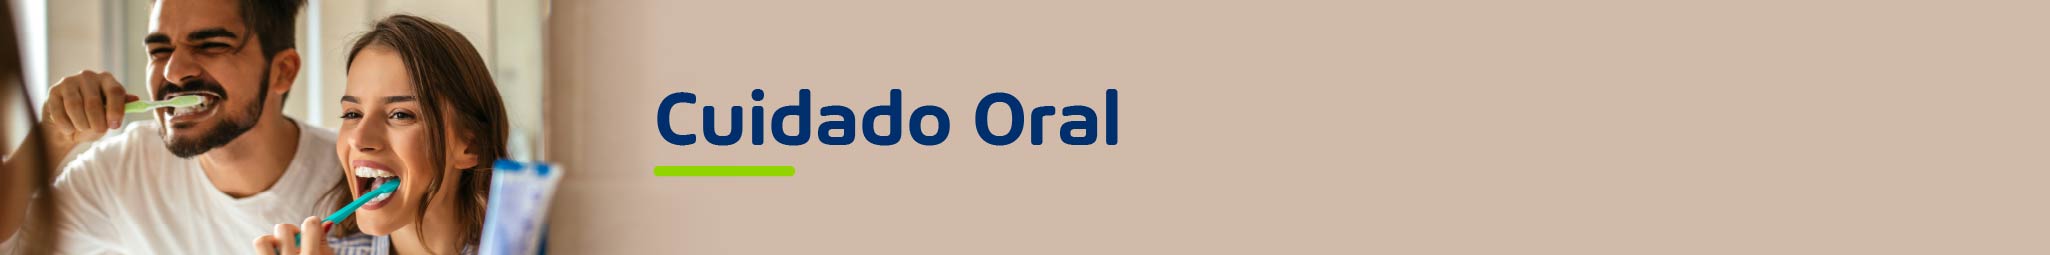 Cuidado personal - Cuidado oral